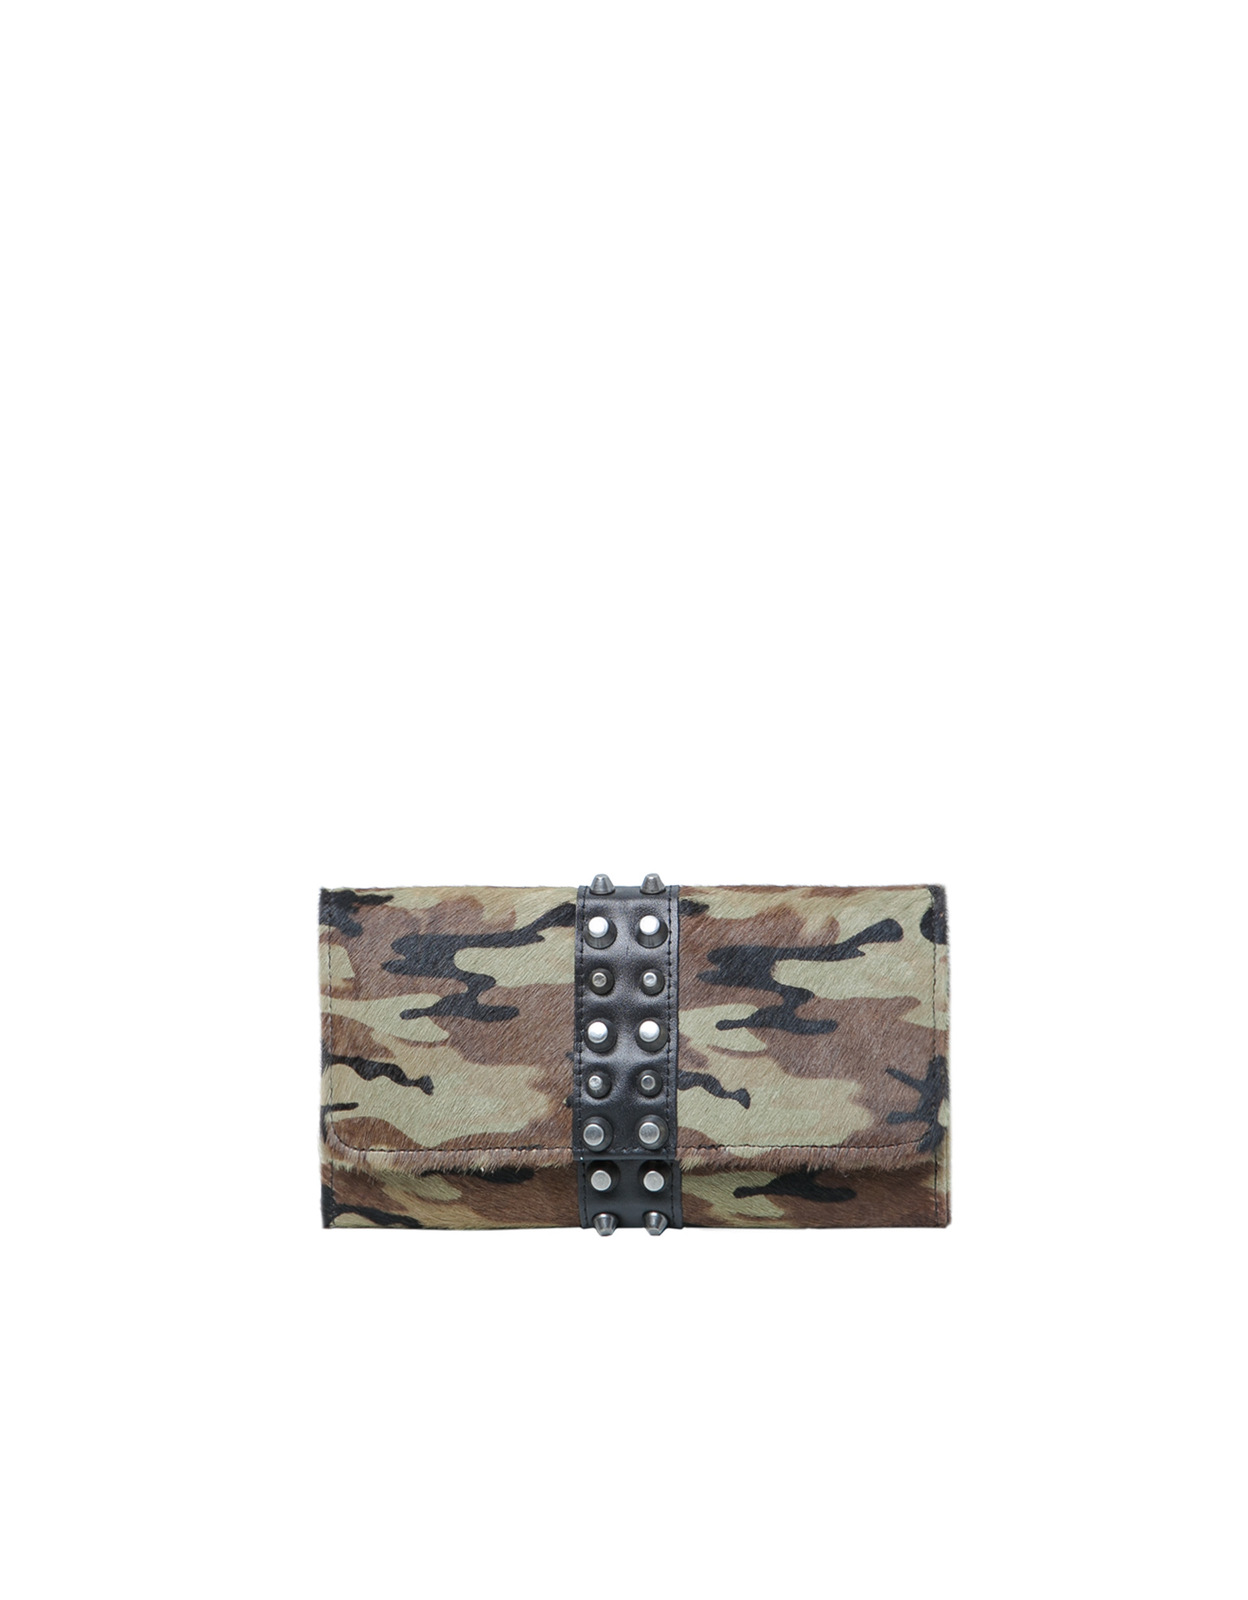 Zara terepszínű pénztárca fotója